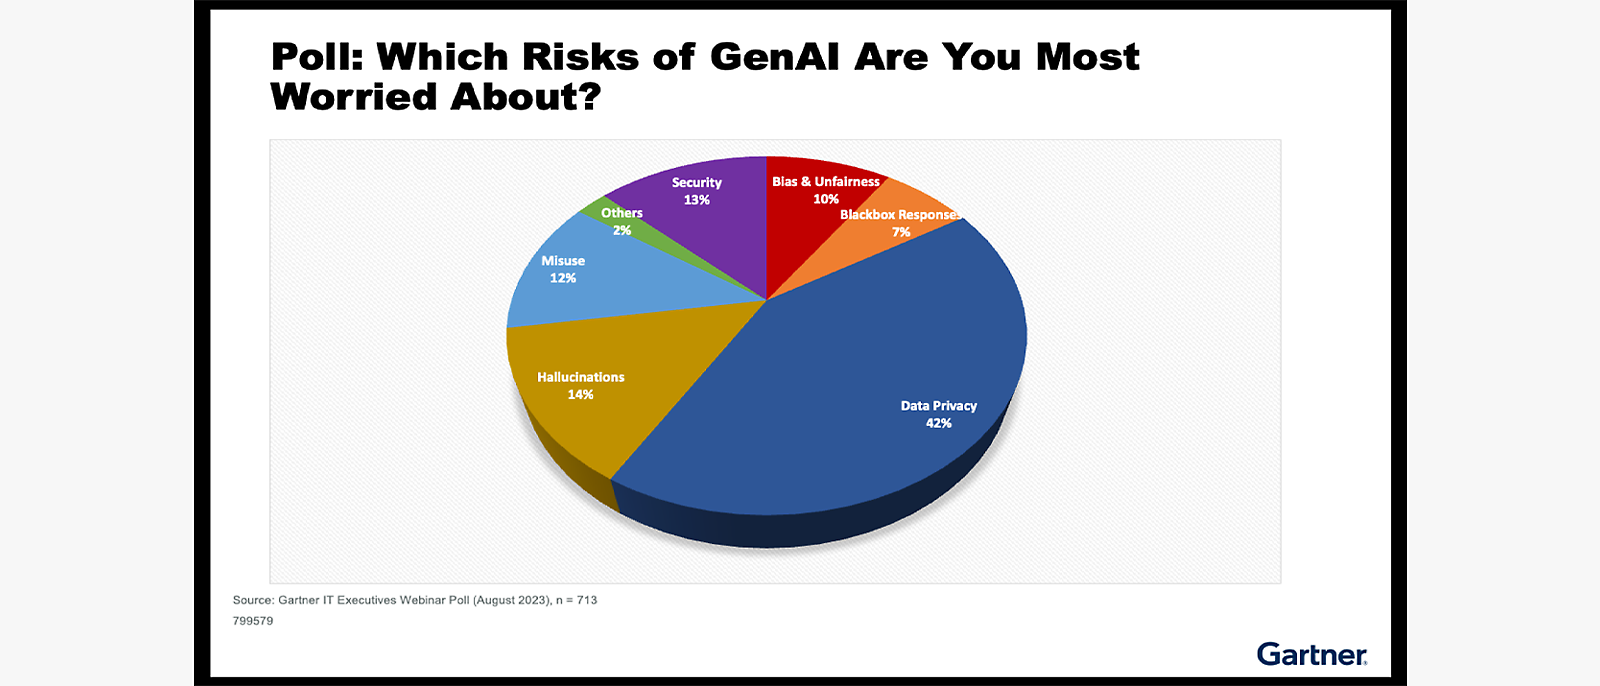 Résultats du sondage sur les risques liés à GenAI : La confidentialité des données est une préoccupation majeure : 42 %